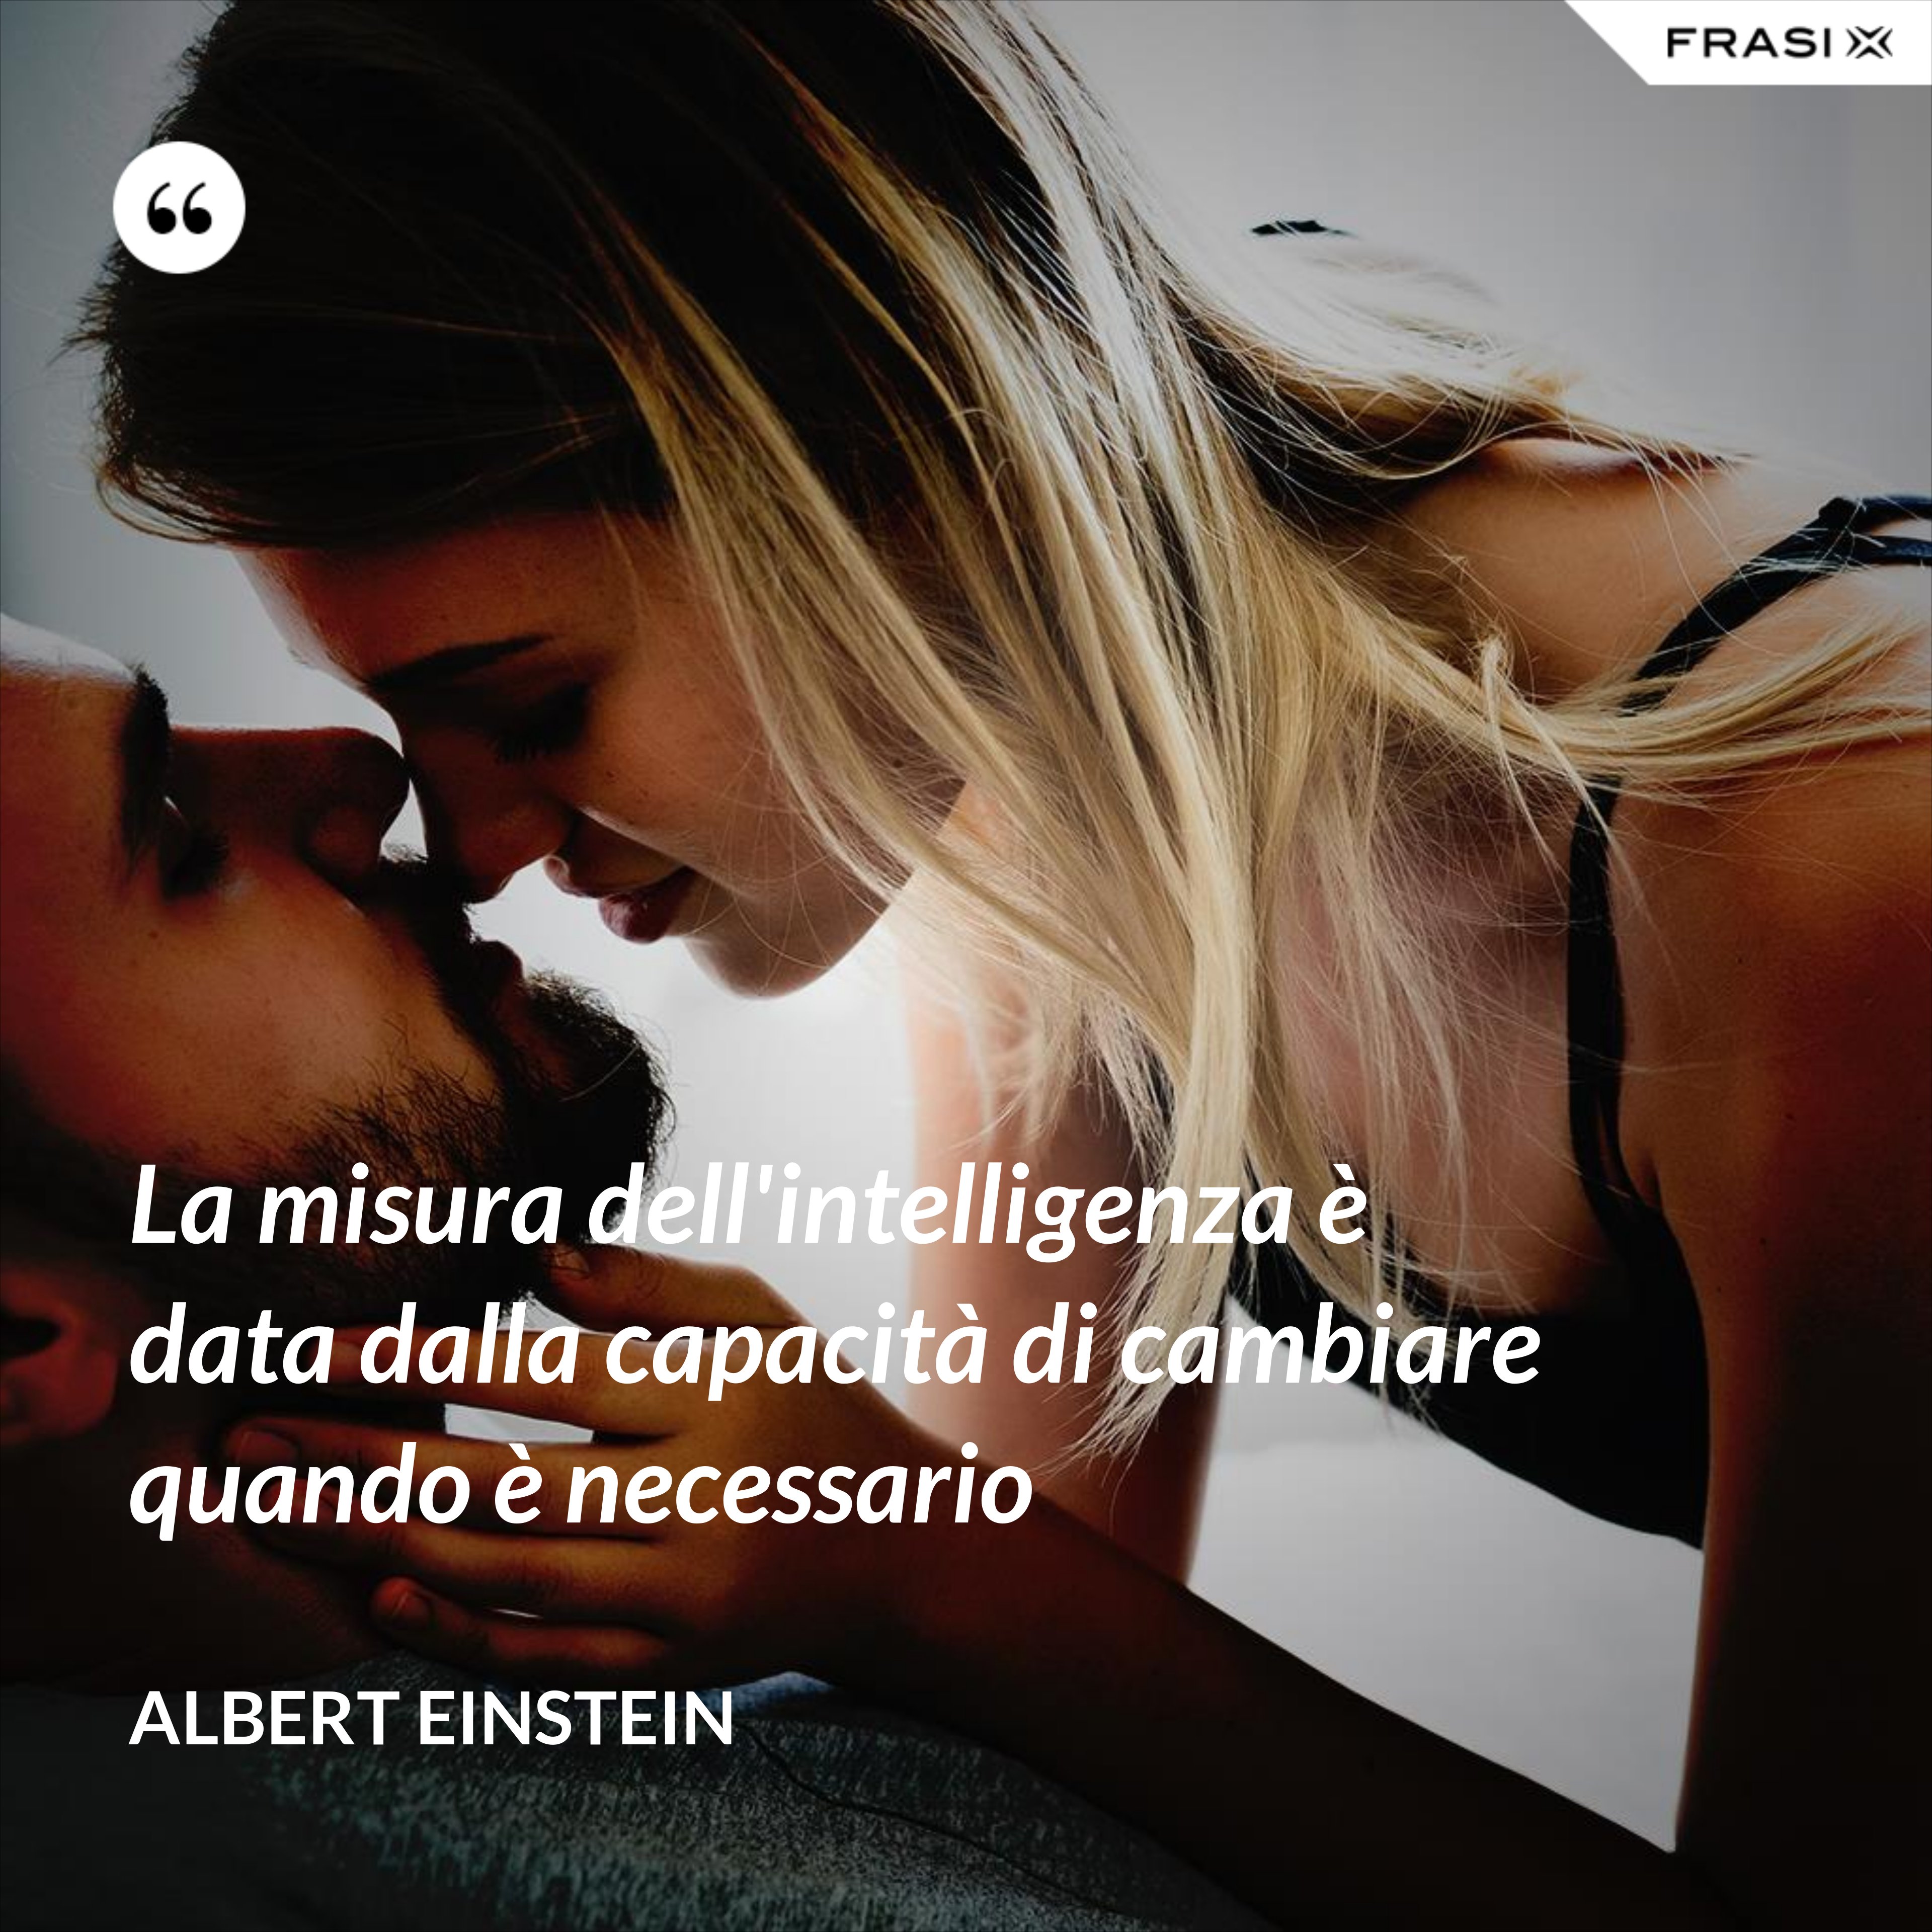 La misura dell'intelligenza è data dalla capacità di cambiare quando è necessario - Albert Einstein